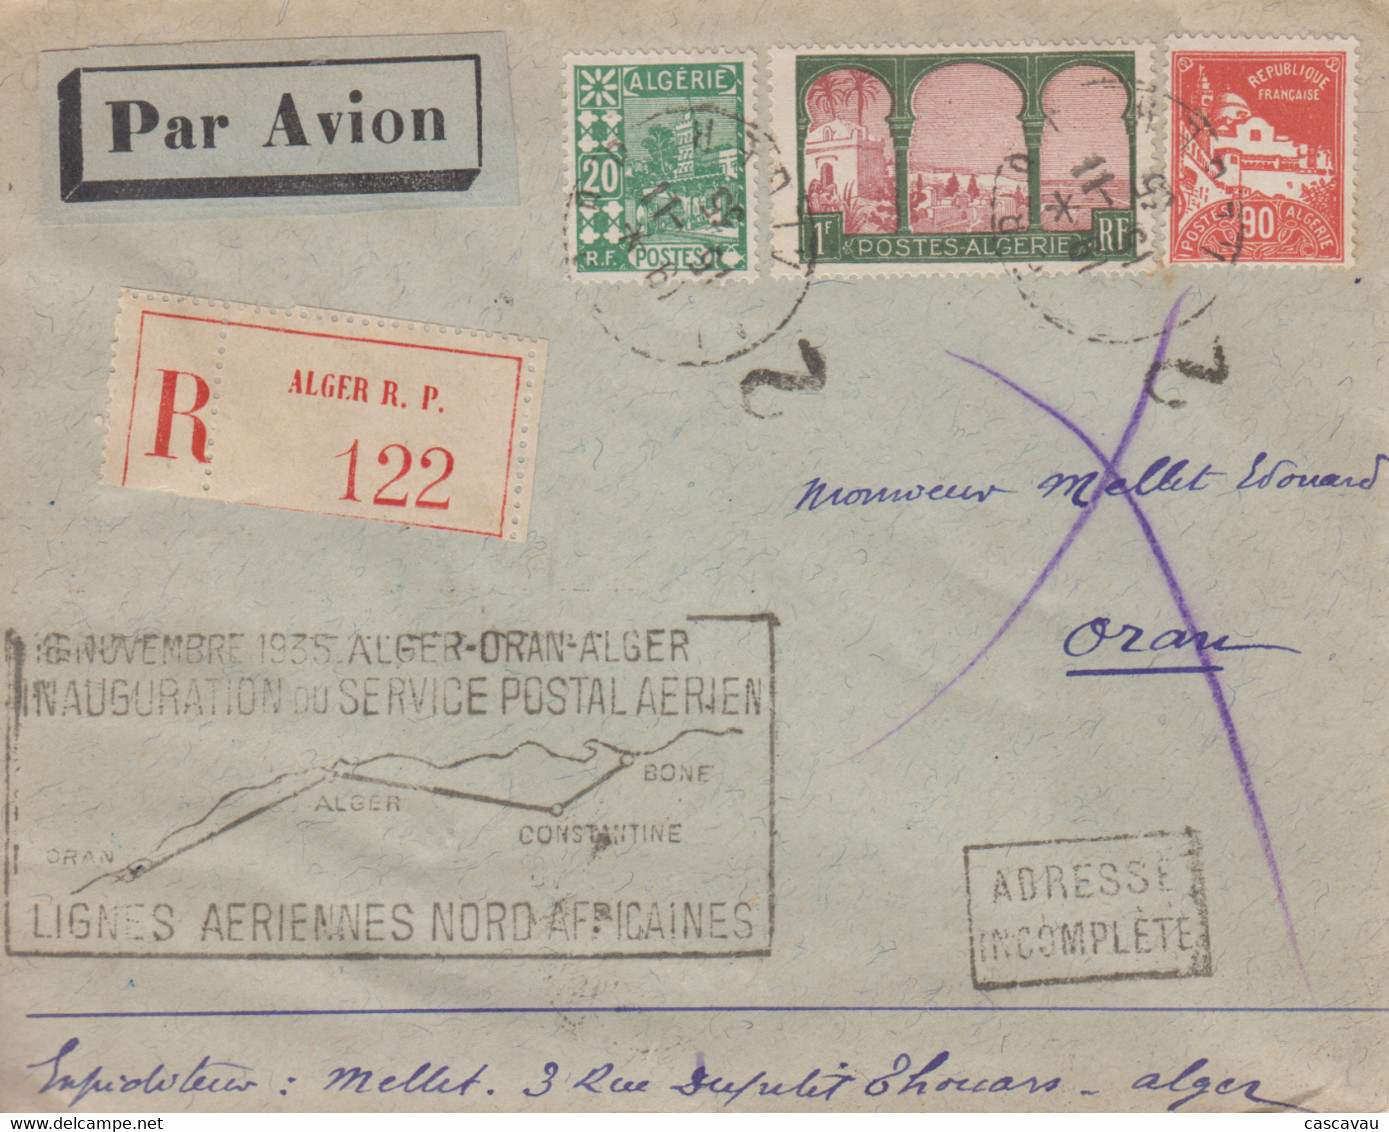 Enveloppe  Recommandée  ALGERIE   Inauguration   Service  Postal   Aérien    ALGER - ORAN - ALGER   1935 - Aéreo